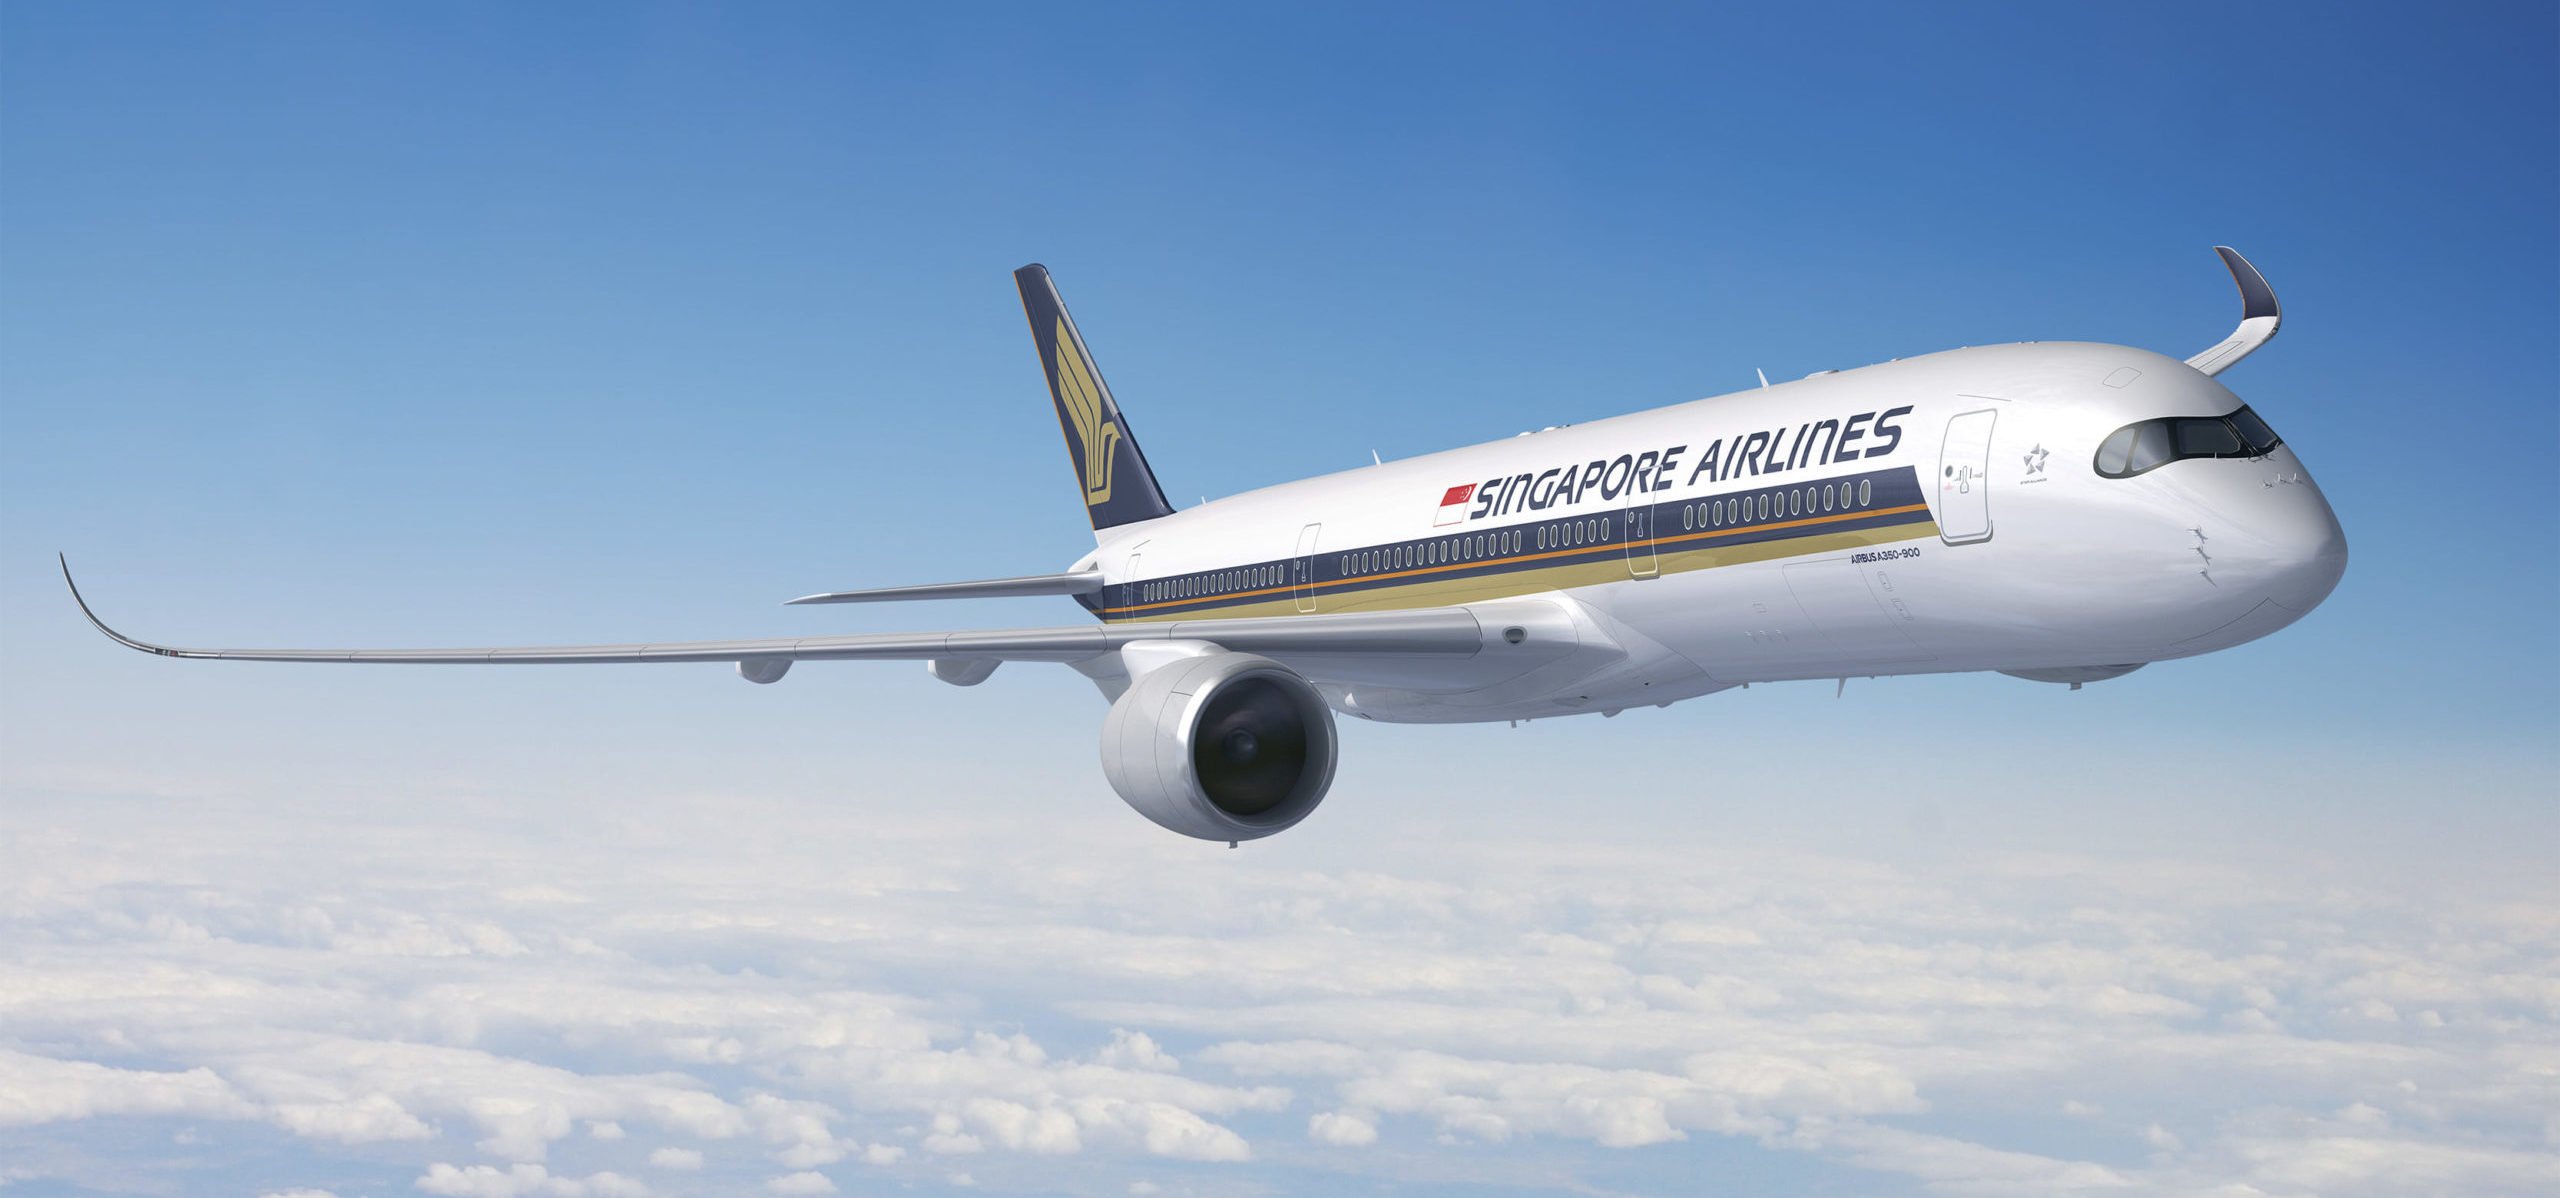 Singapore Airlines lanza comunicado tras incidente: ‘Sentimos la traumática experiencia’